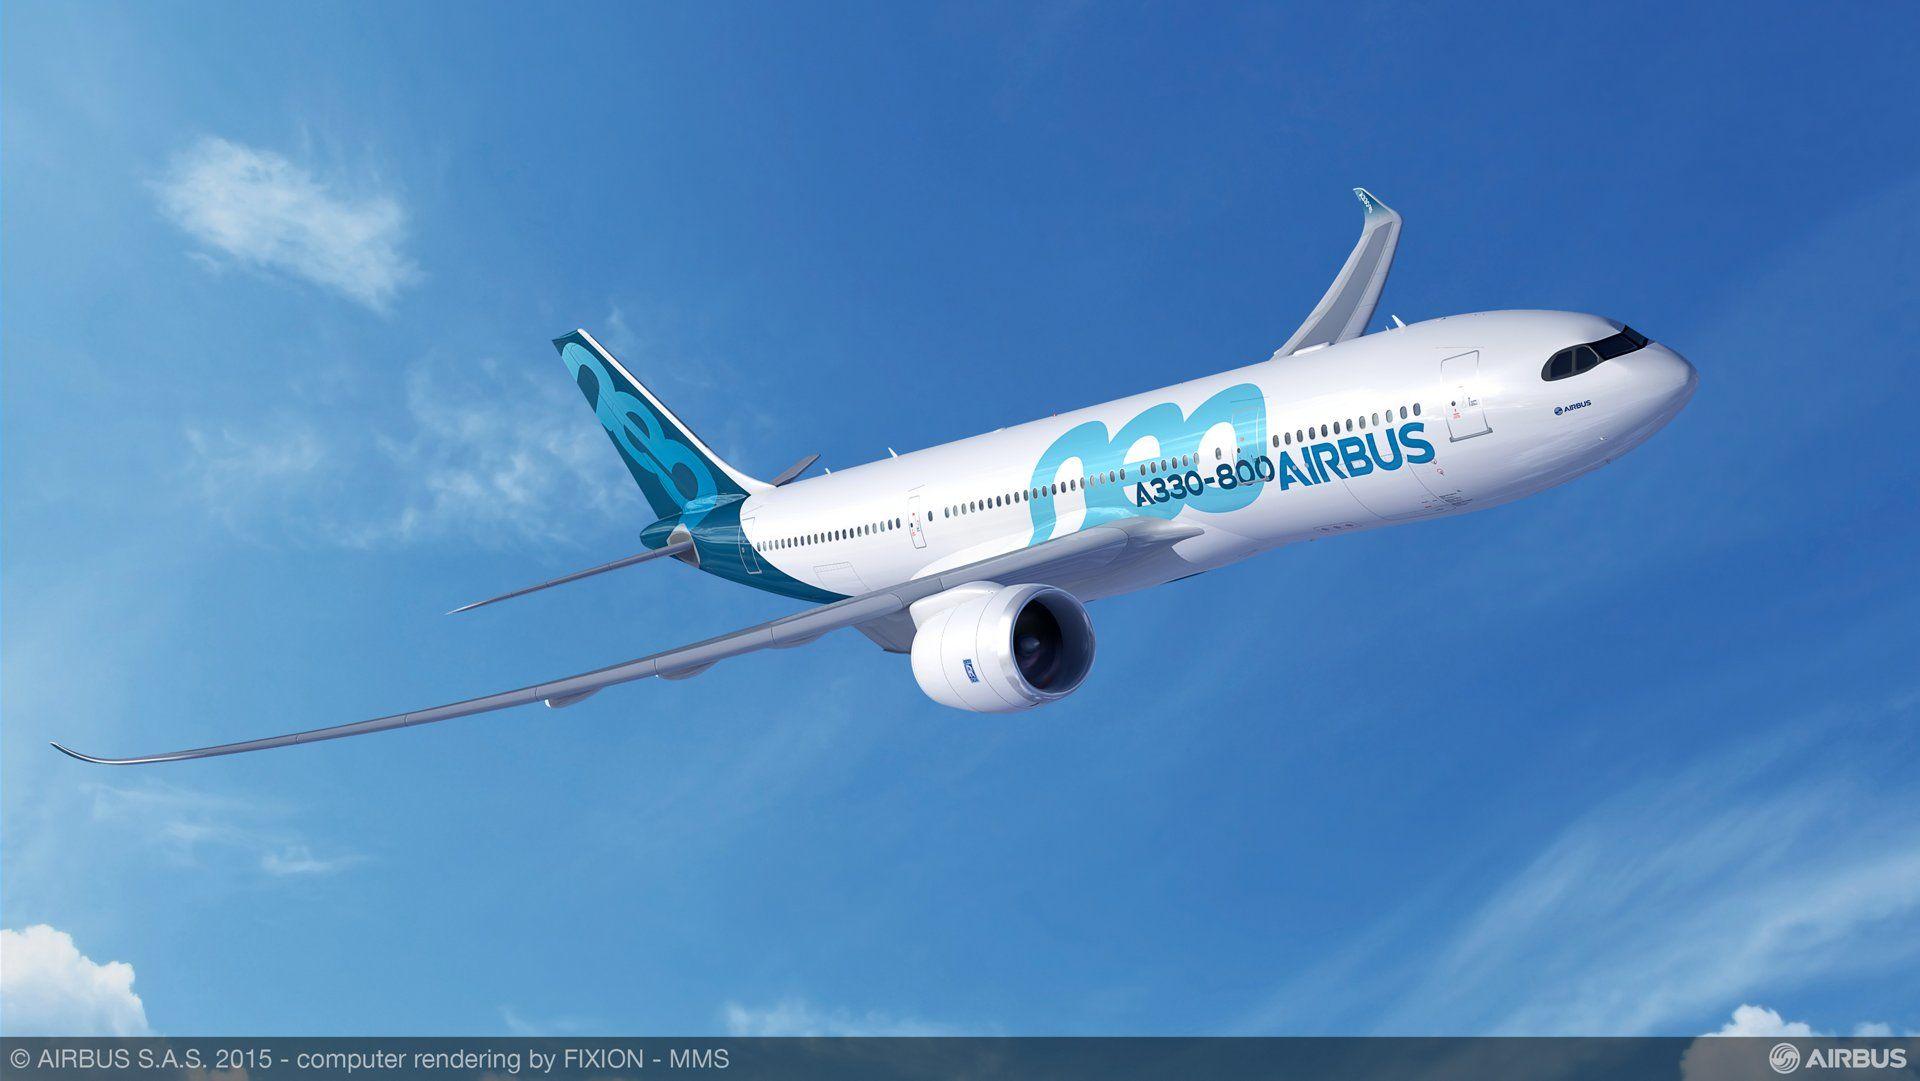 A330neo: Powering into the next decade